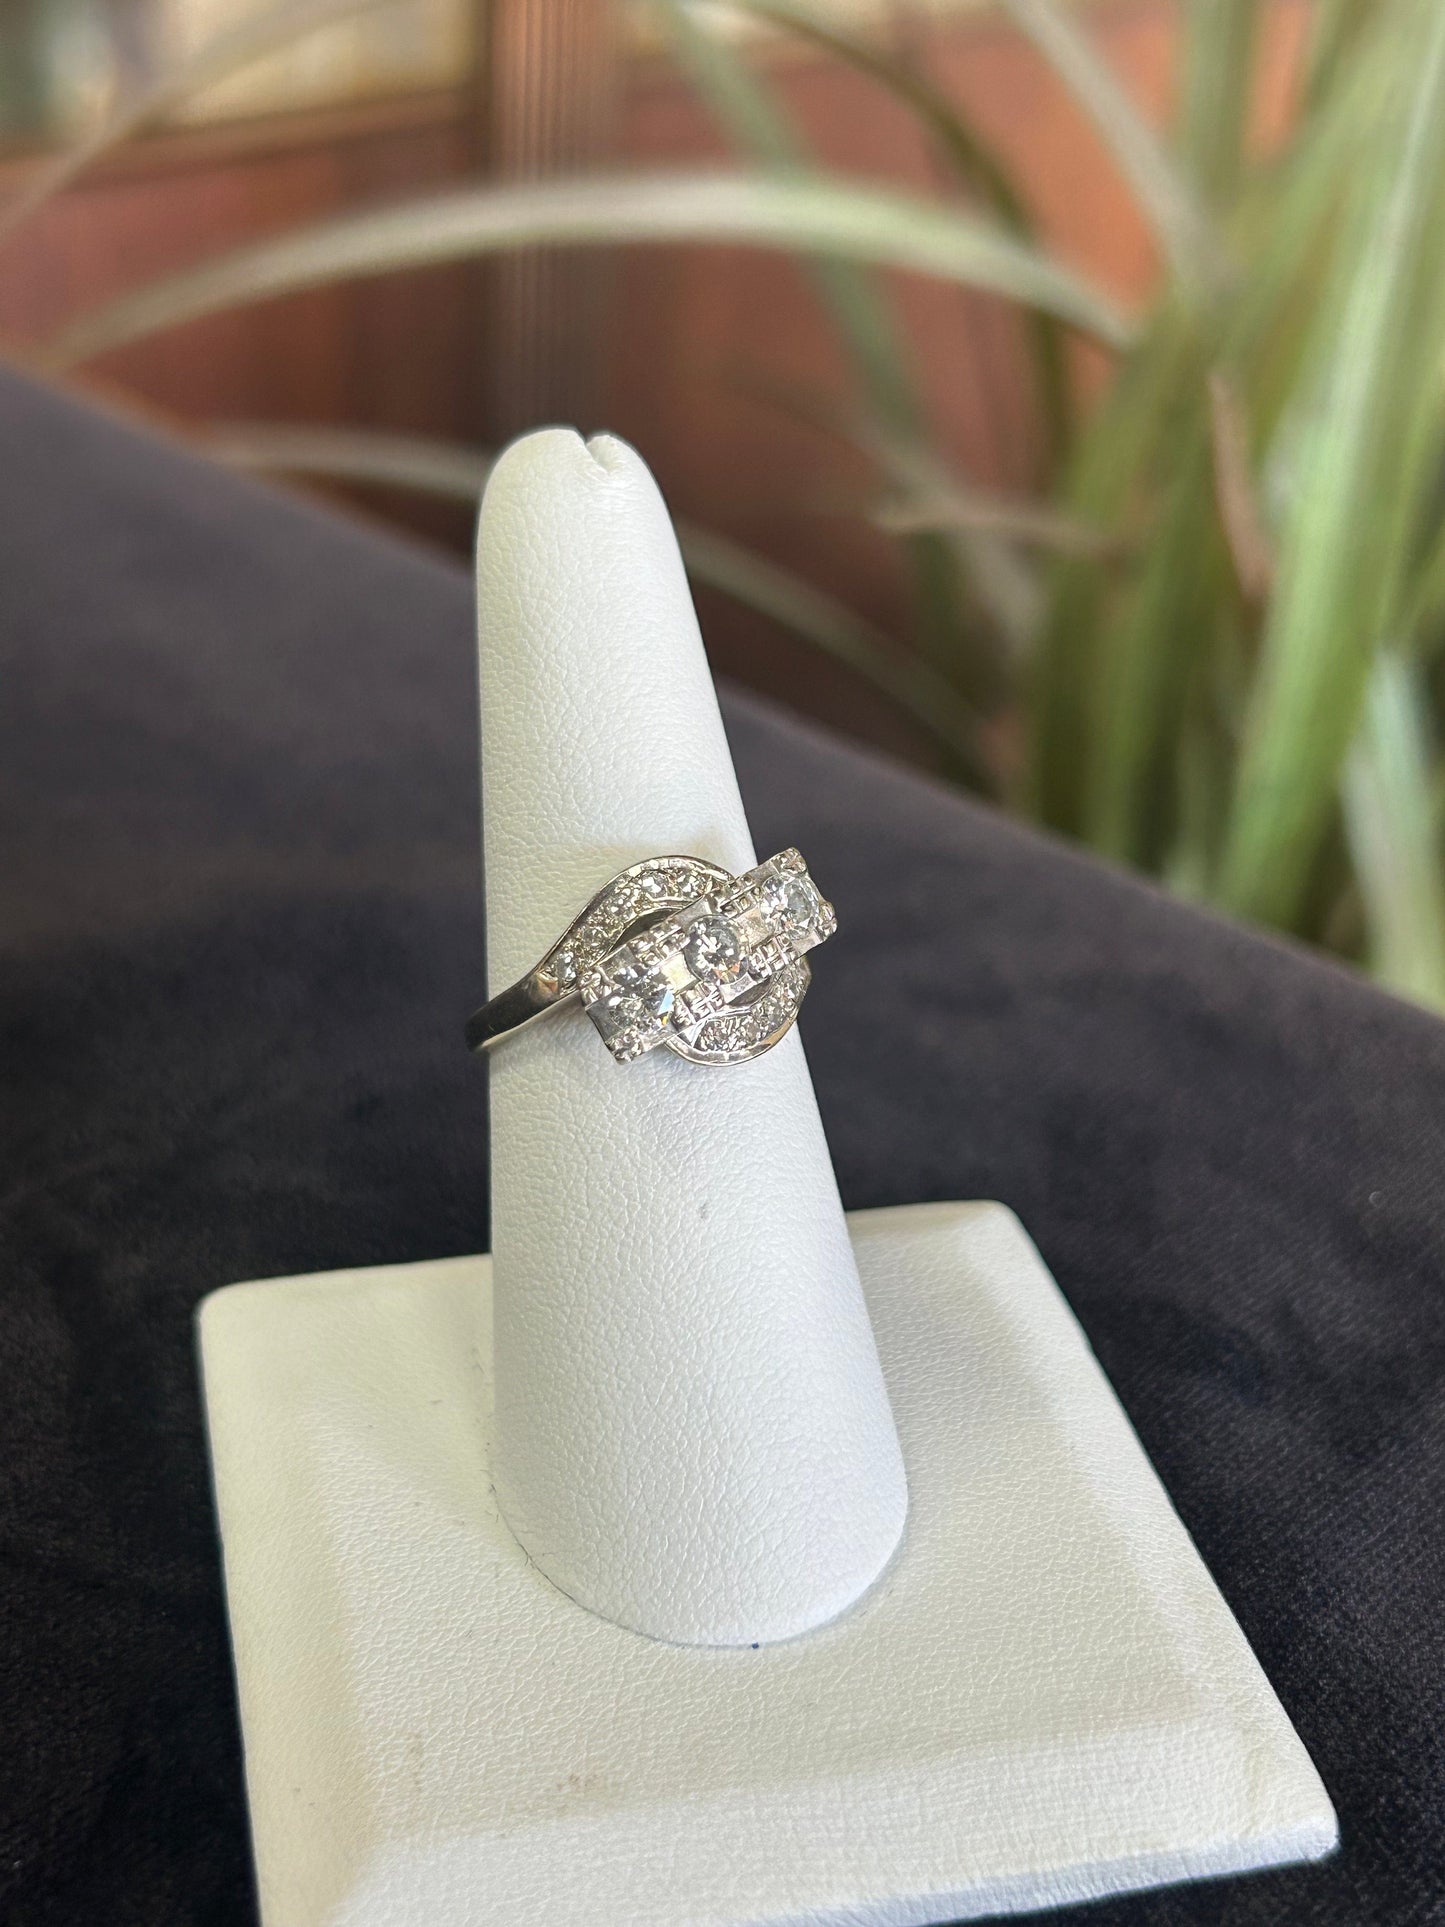 Unique Art Deco Style WG Engagement Ring